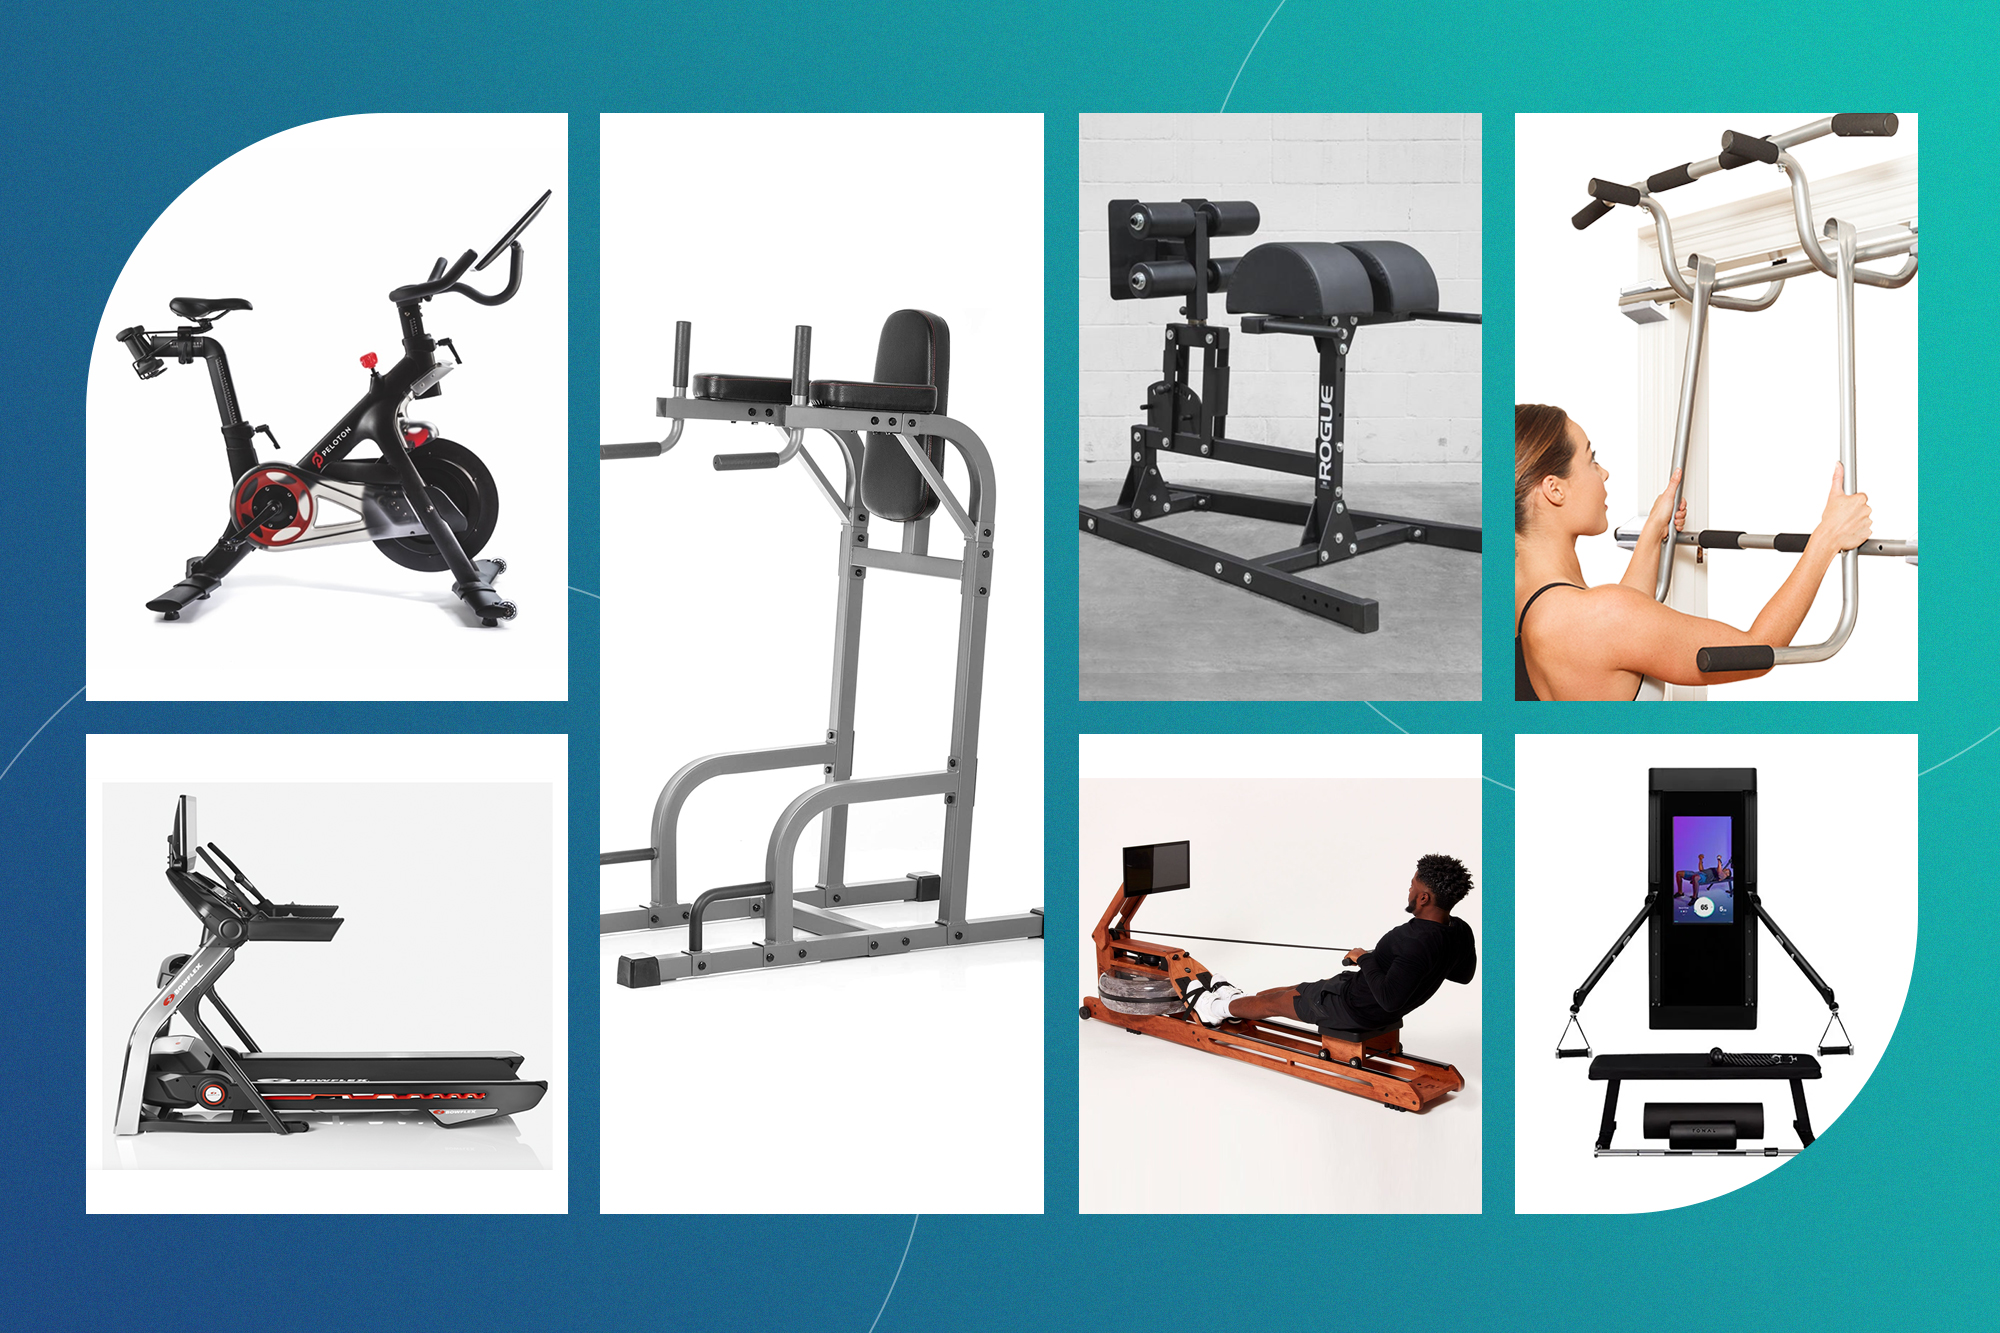 22 Essential Gym Equipment Items Every Fitness Center Needs